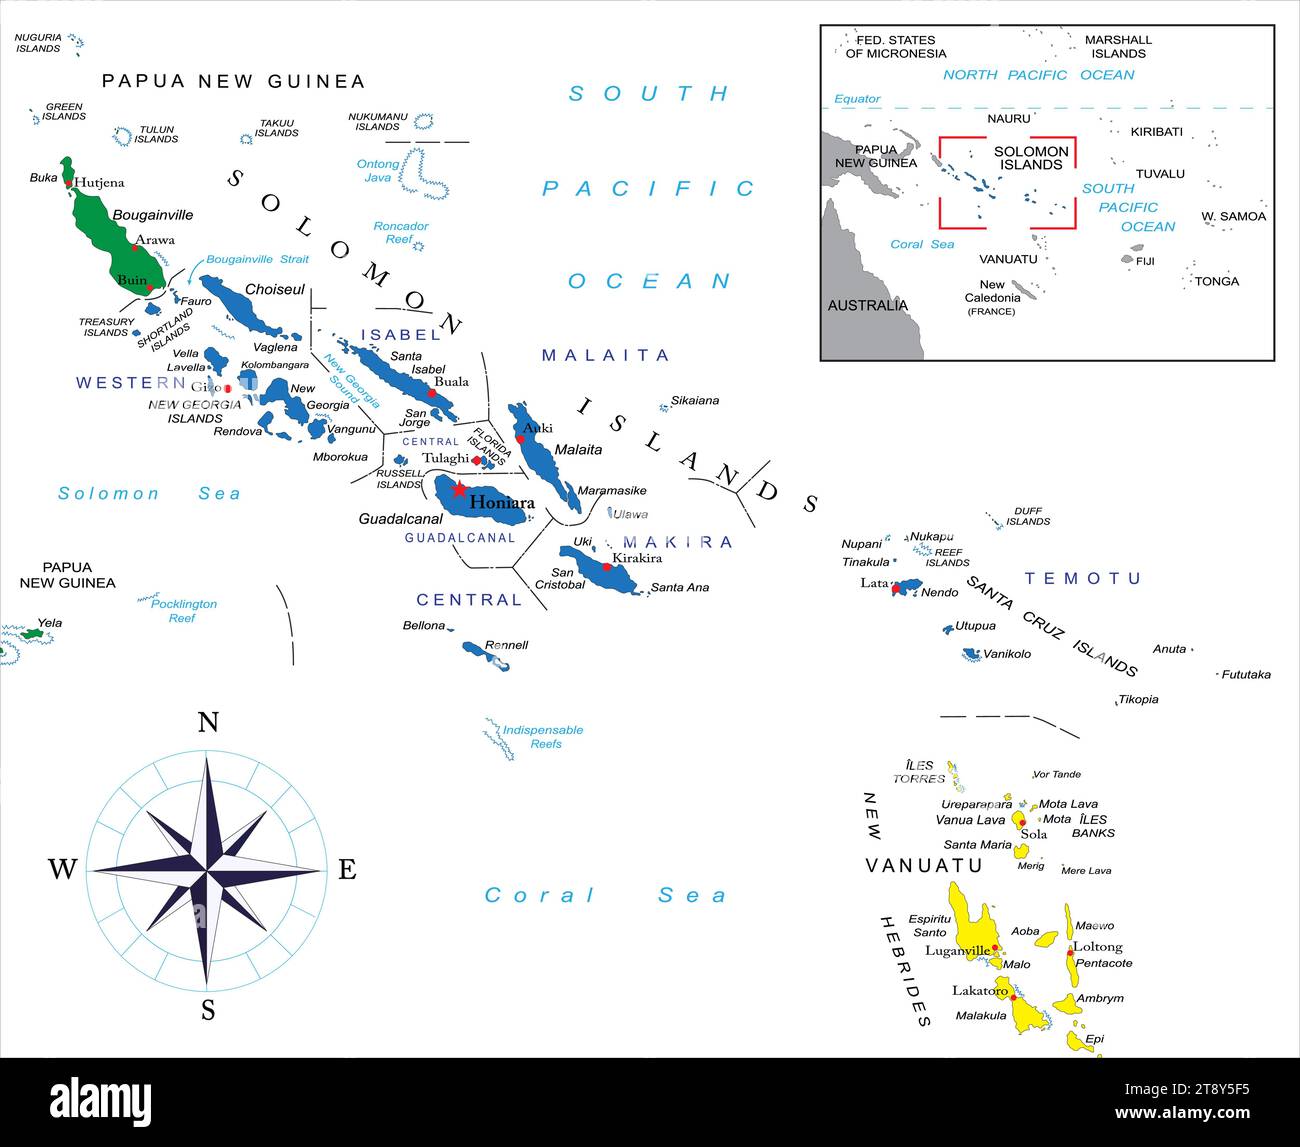 Mappa vettoriale politica altamente dettagliata delle isole Salomone con regioni amministrative e principali città. Illustrazione Vettoriale